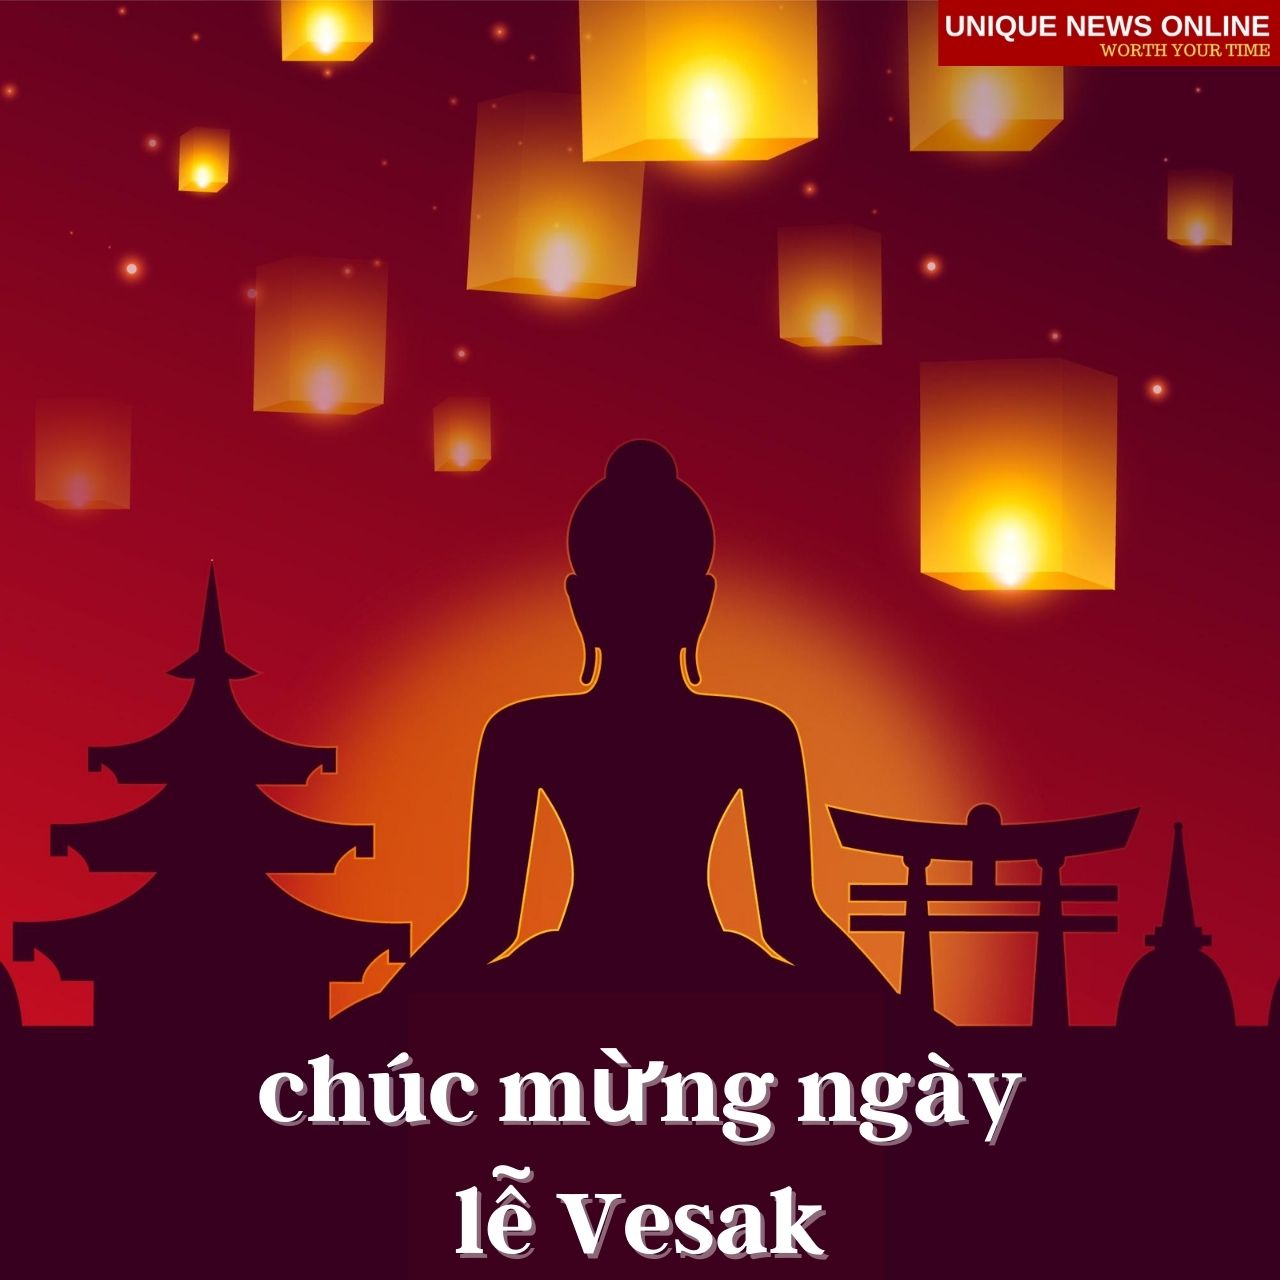 Vesak Day wishes in Vietnamese